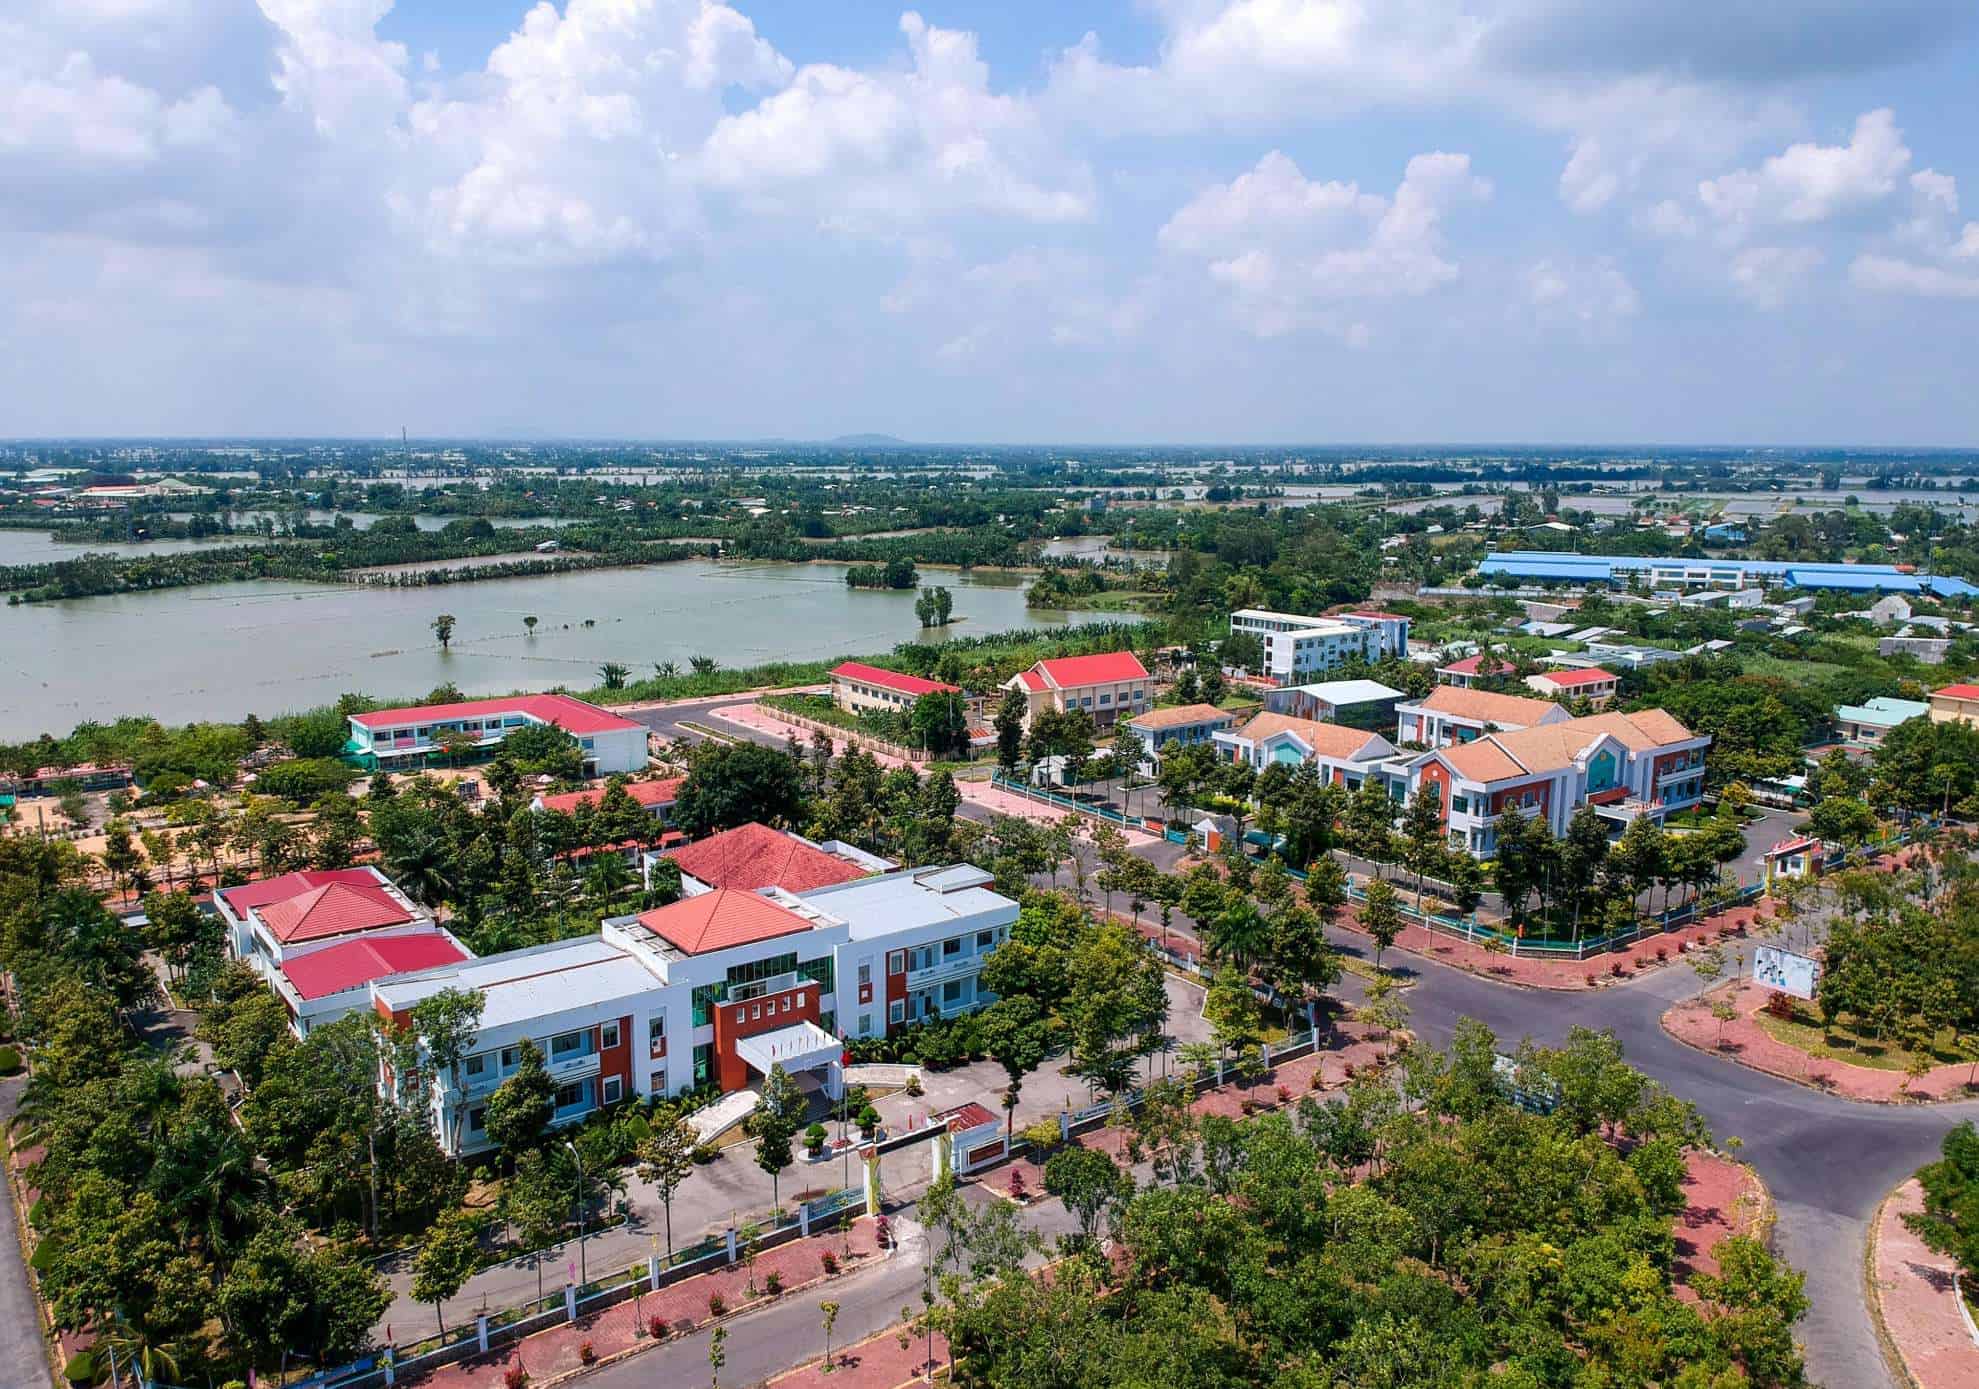 Huyện Vĩnh Thạnh đang đẩy mạnh đầu tư, chỉnh trang đô thị và xây dựng cơ sở hạ tầng 